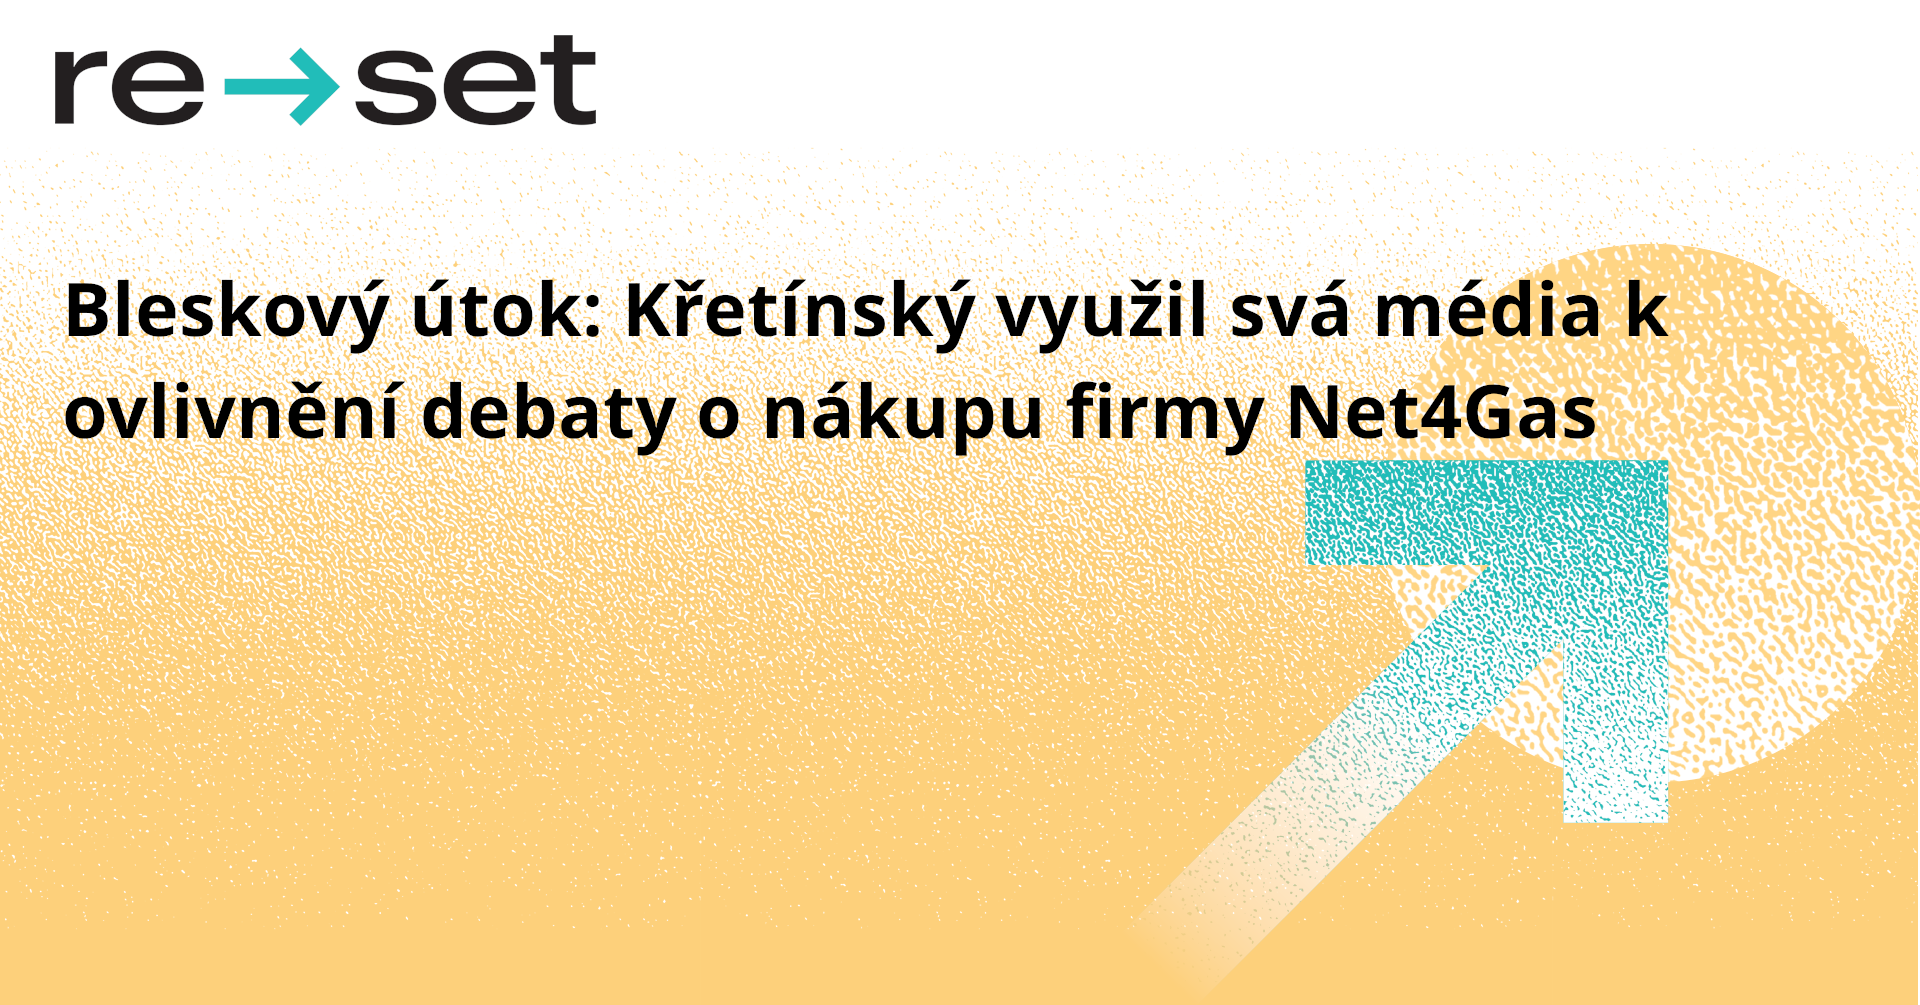 Bleskový útok: Křetínský využil svá média k ovlivnění debaty o nákupu firmy Net4Gas